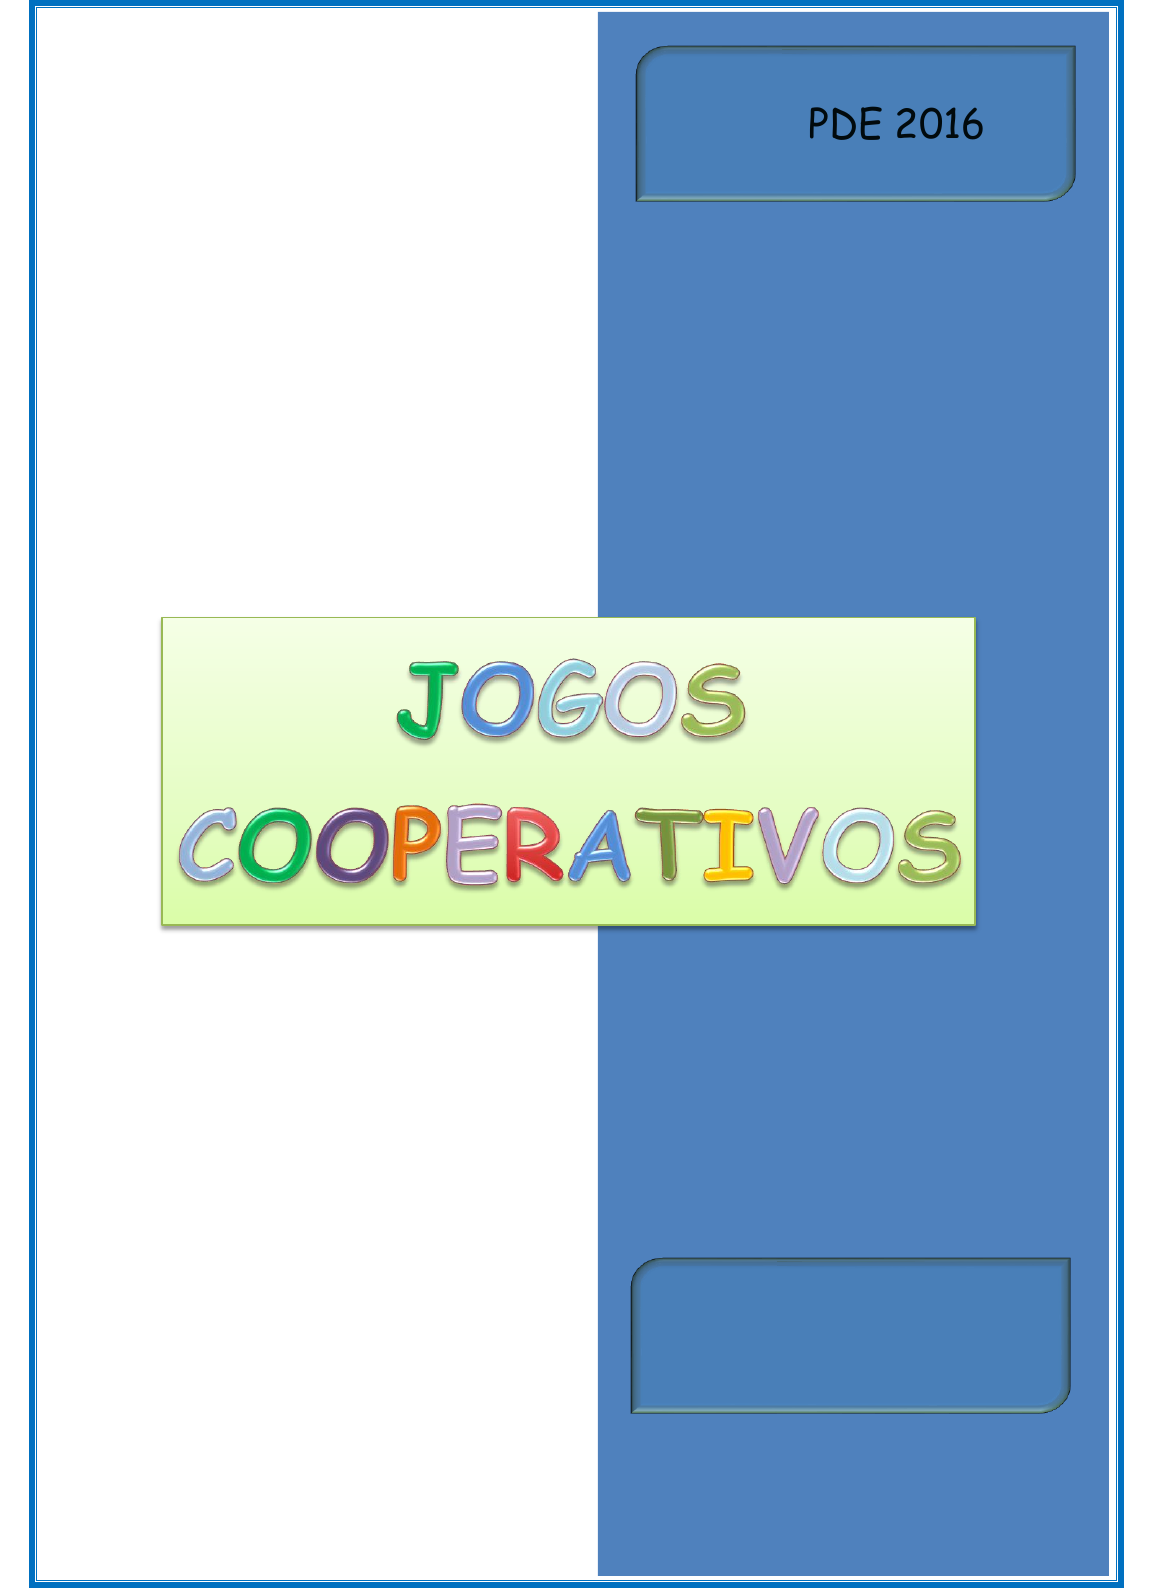 JOGOS COOPERATIVOS - Atividades com CONE E BOLA - Atividades de